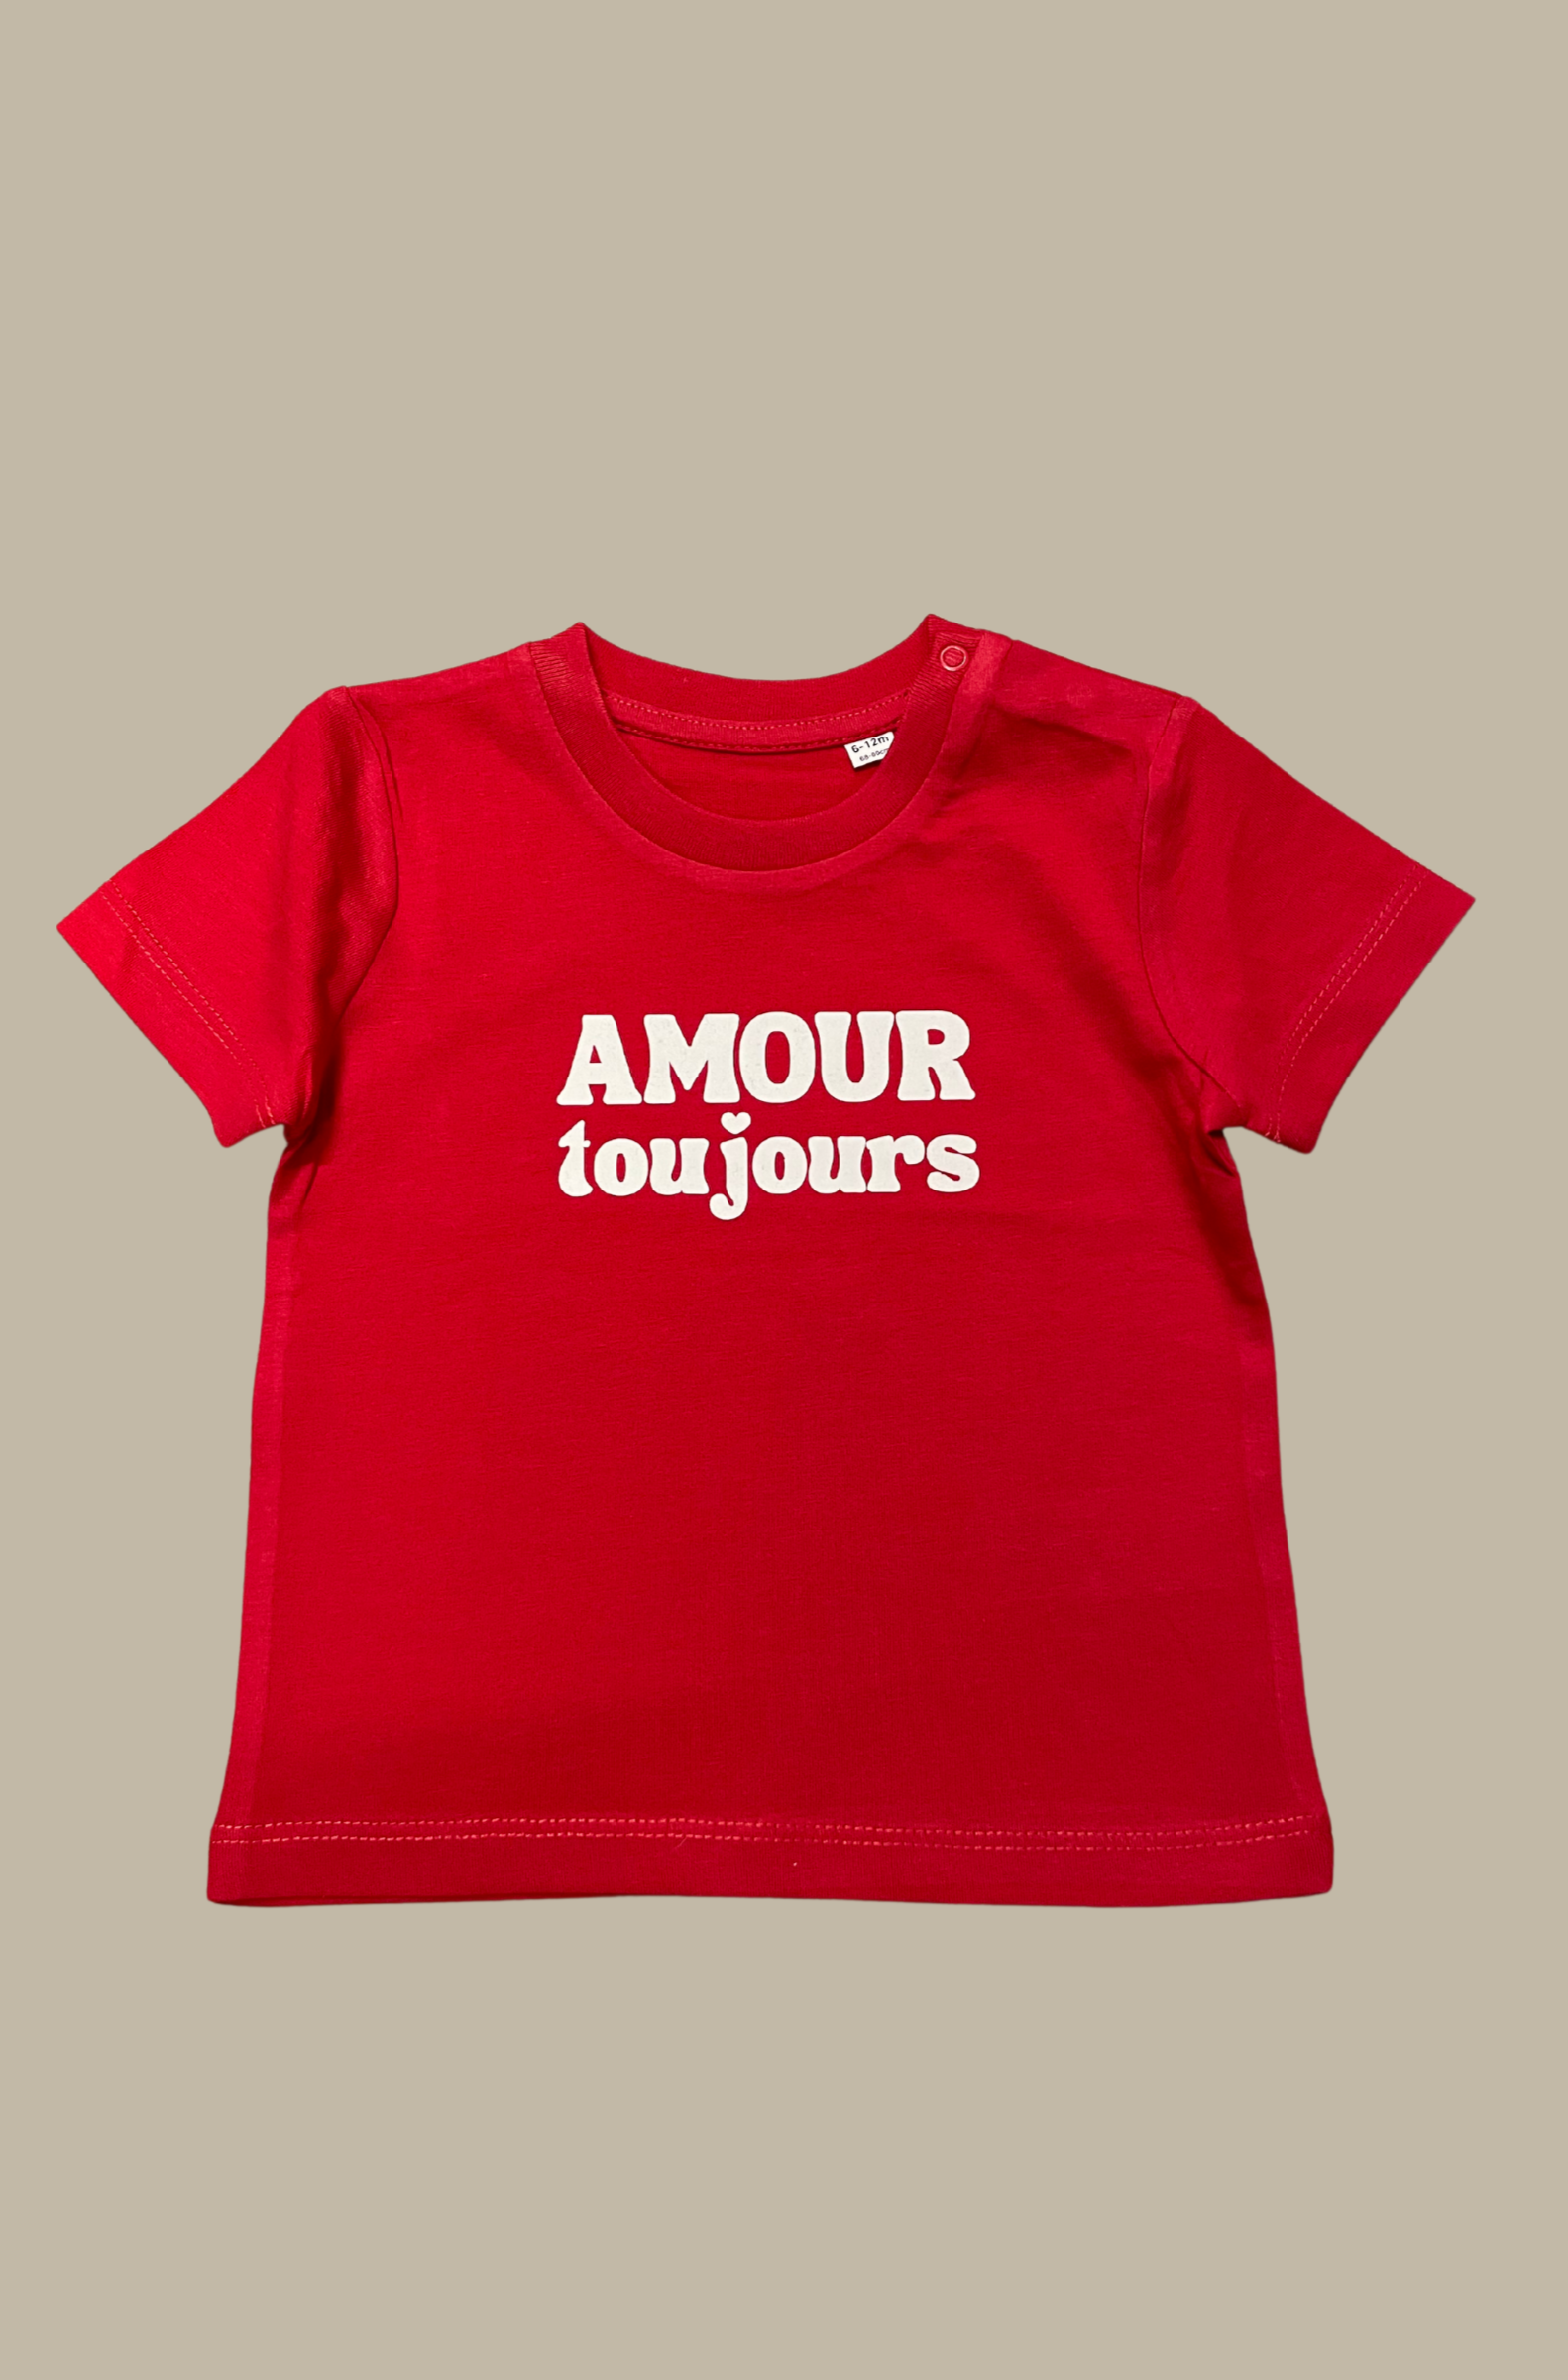 Bébé Amour toujours T-Shirt - Rot / Weiß